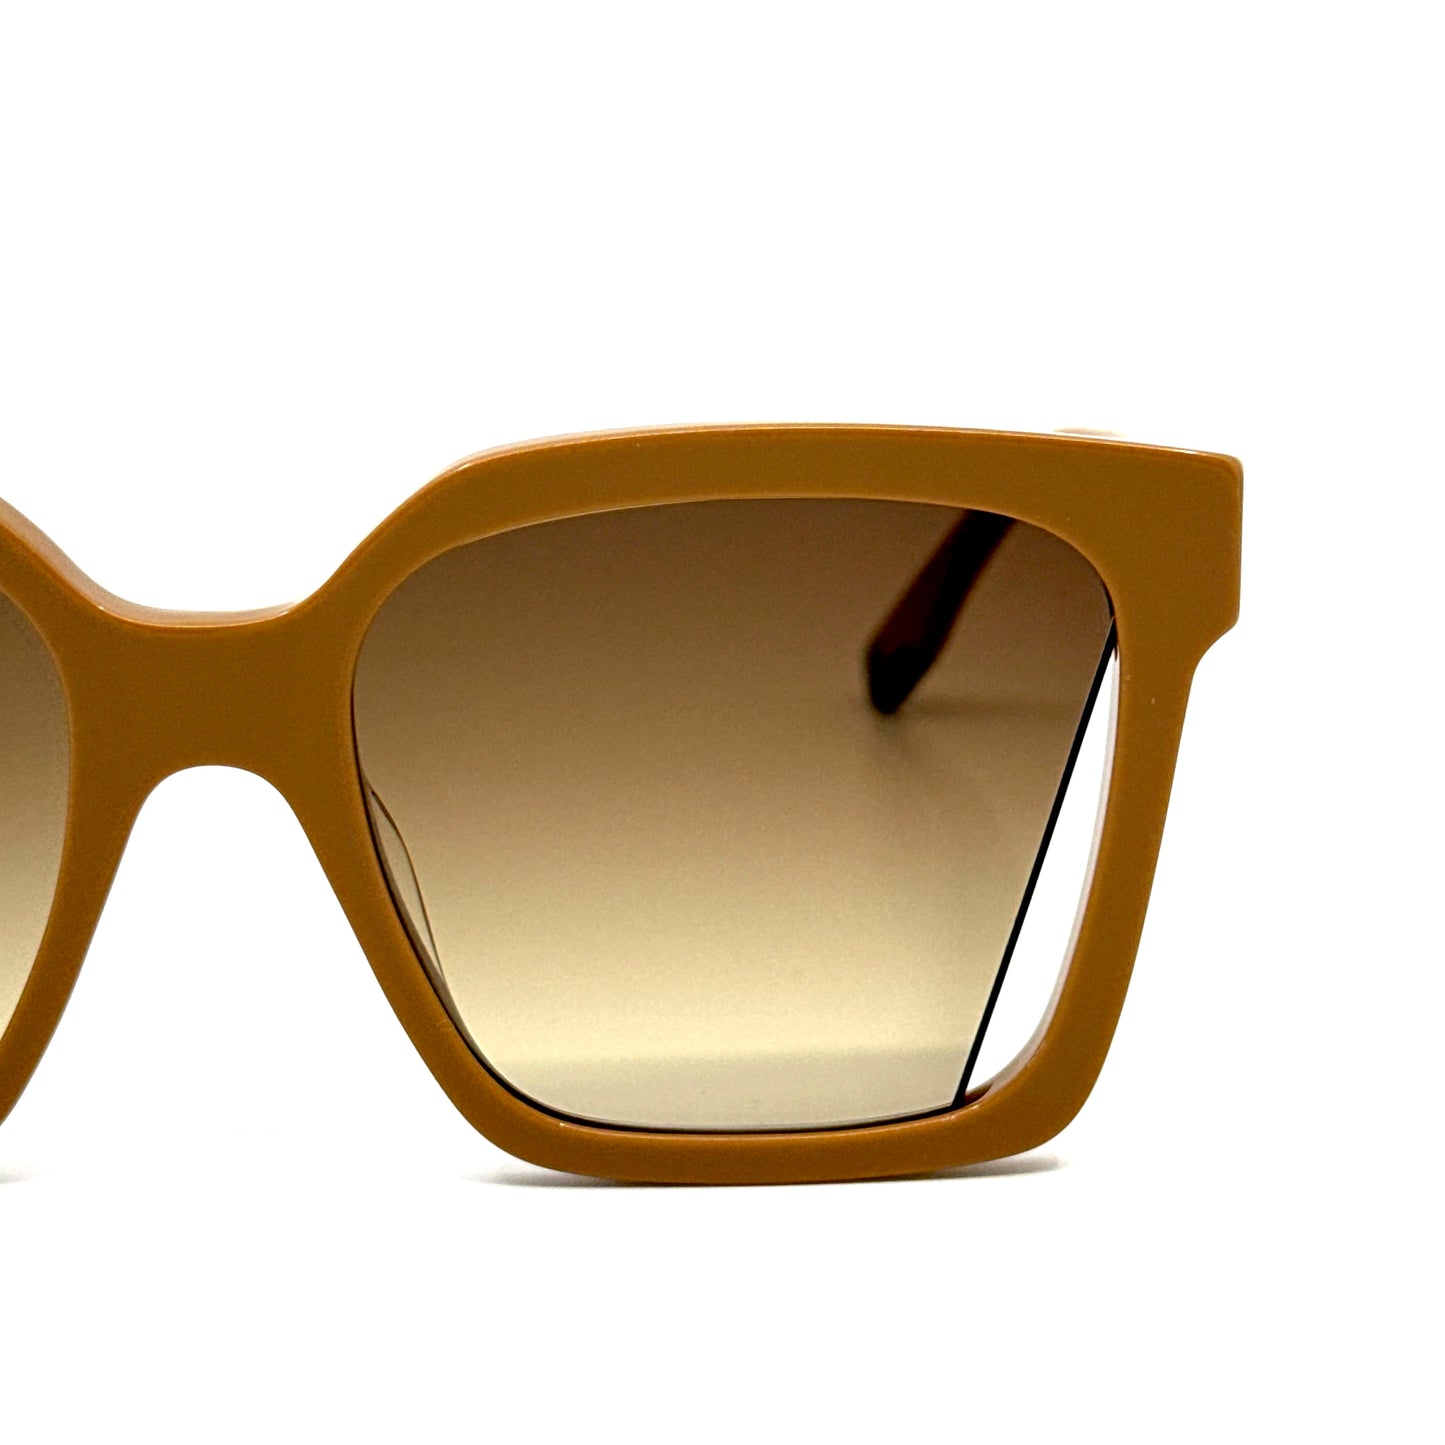 FENDI Sunglasses FE40085I 57F